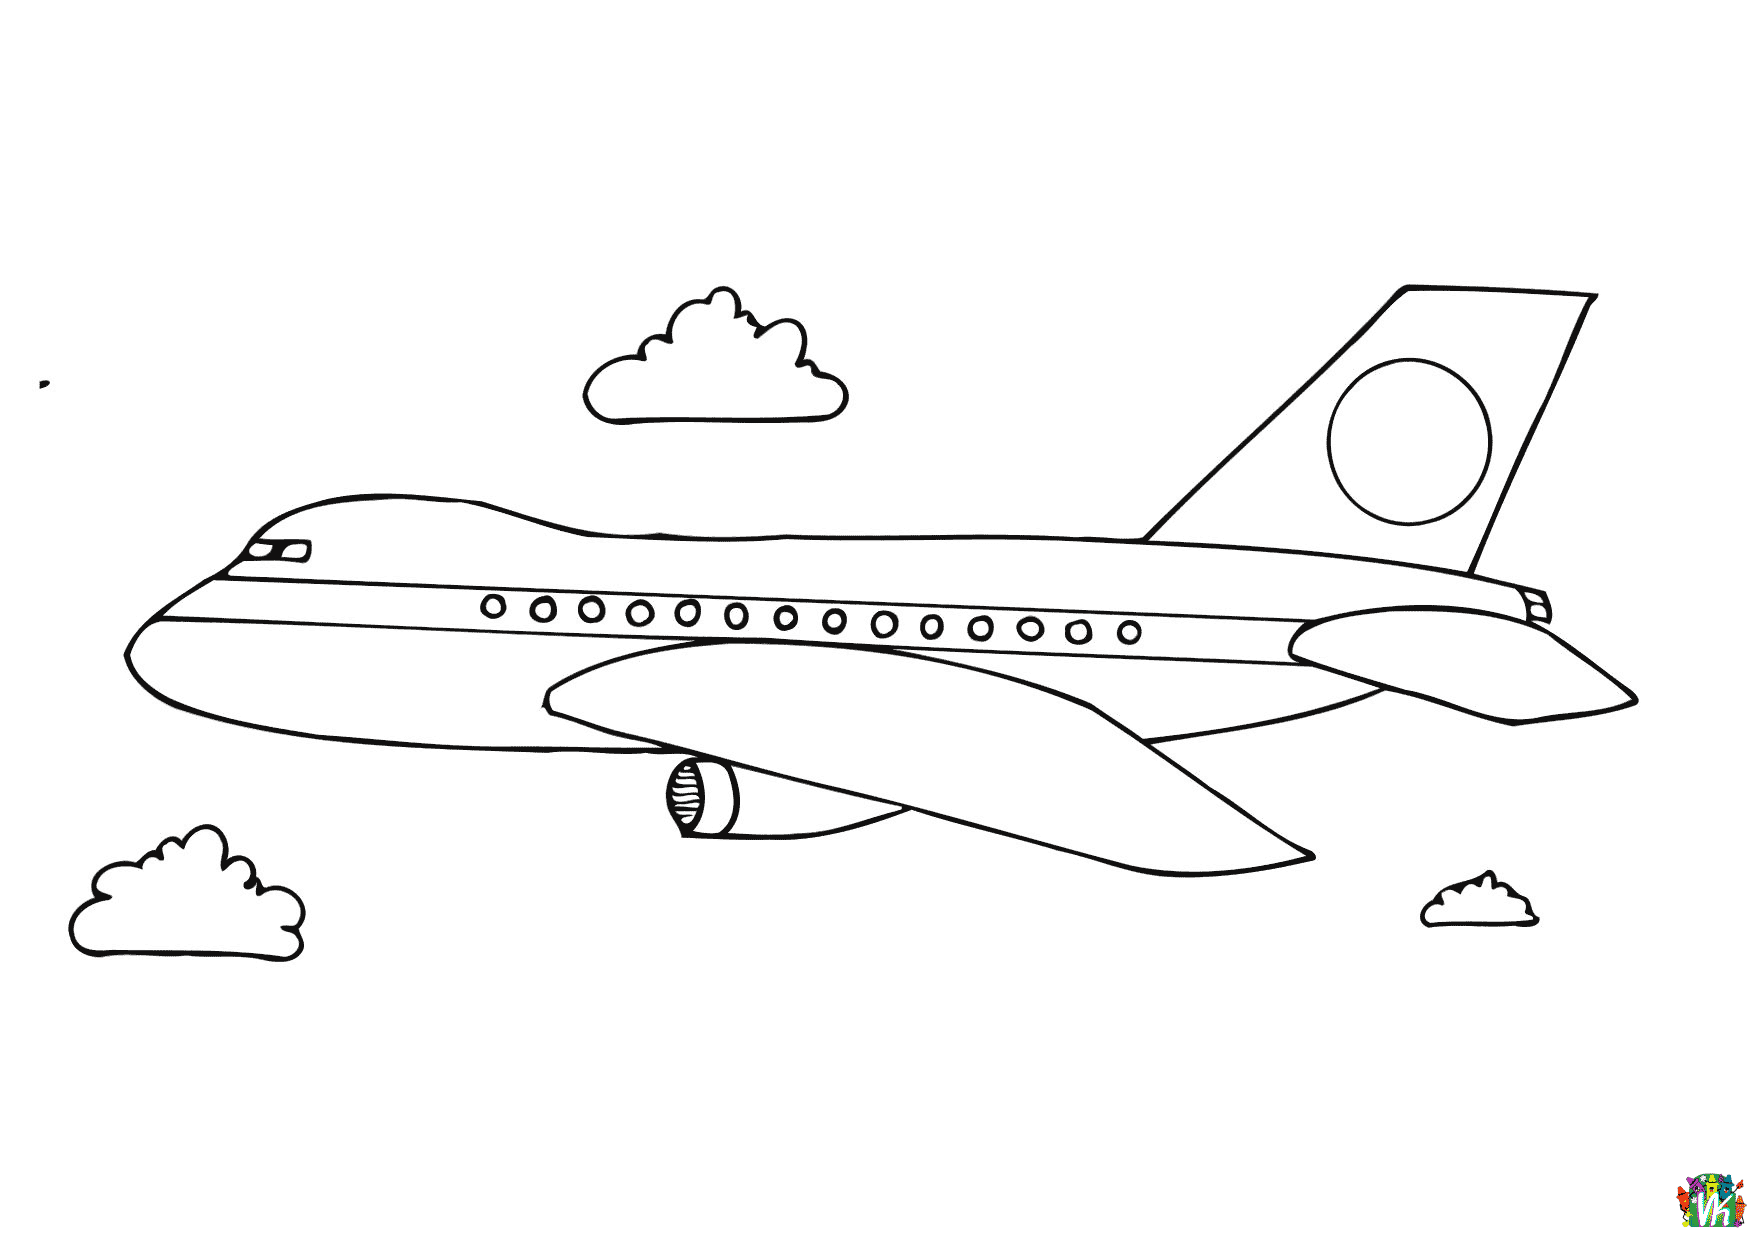 Lentokoneet-varityskuvat (14)